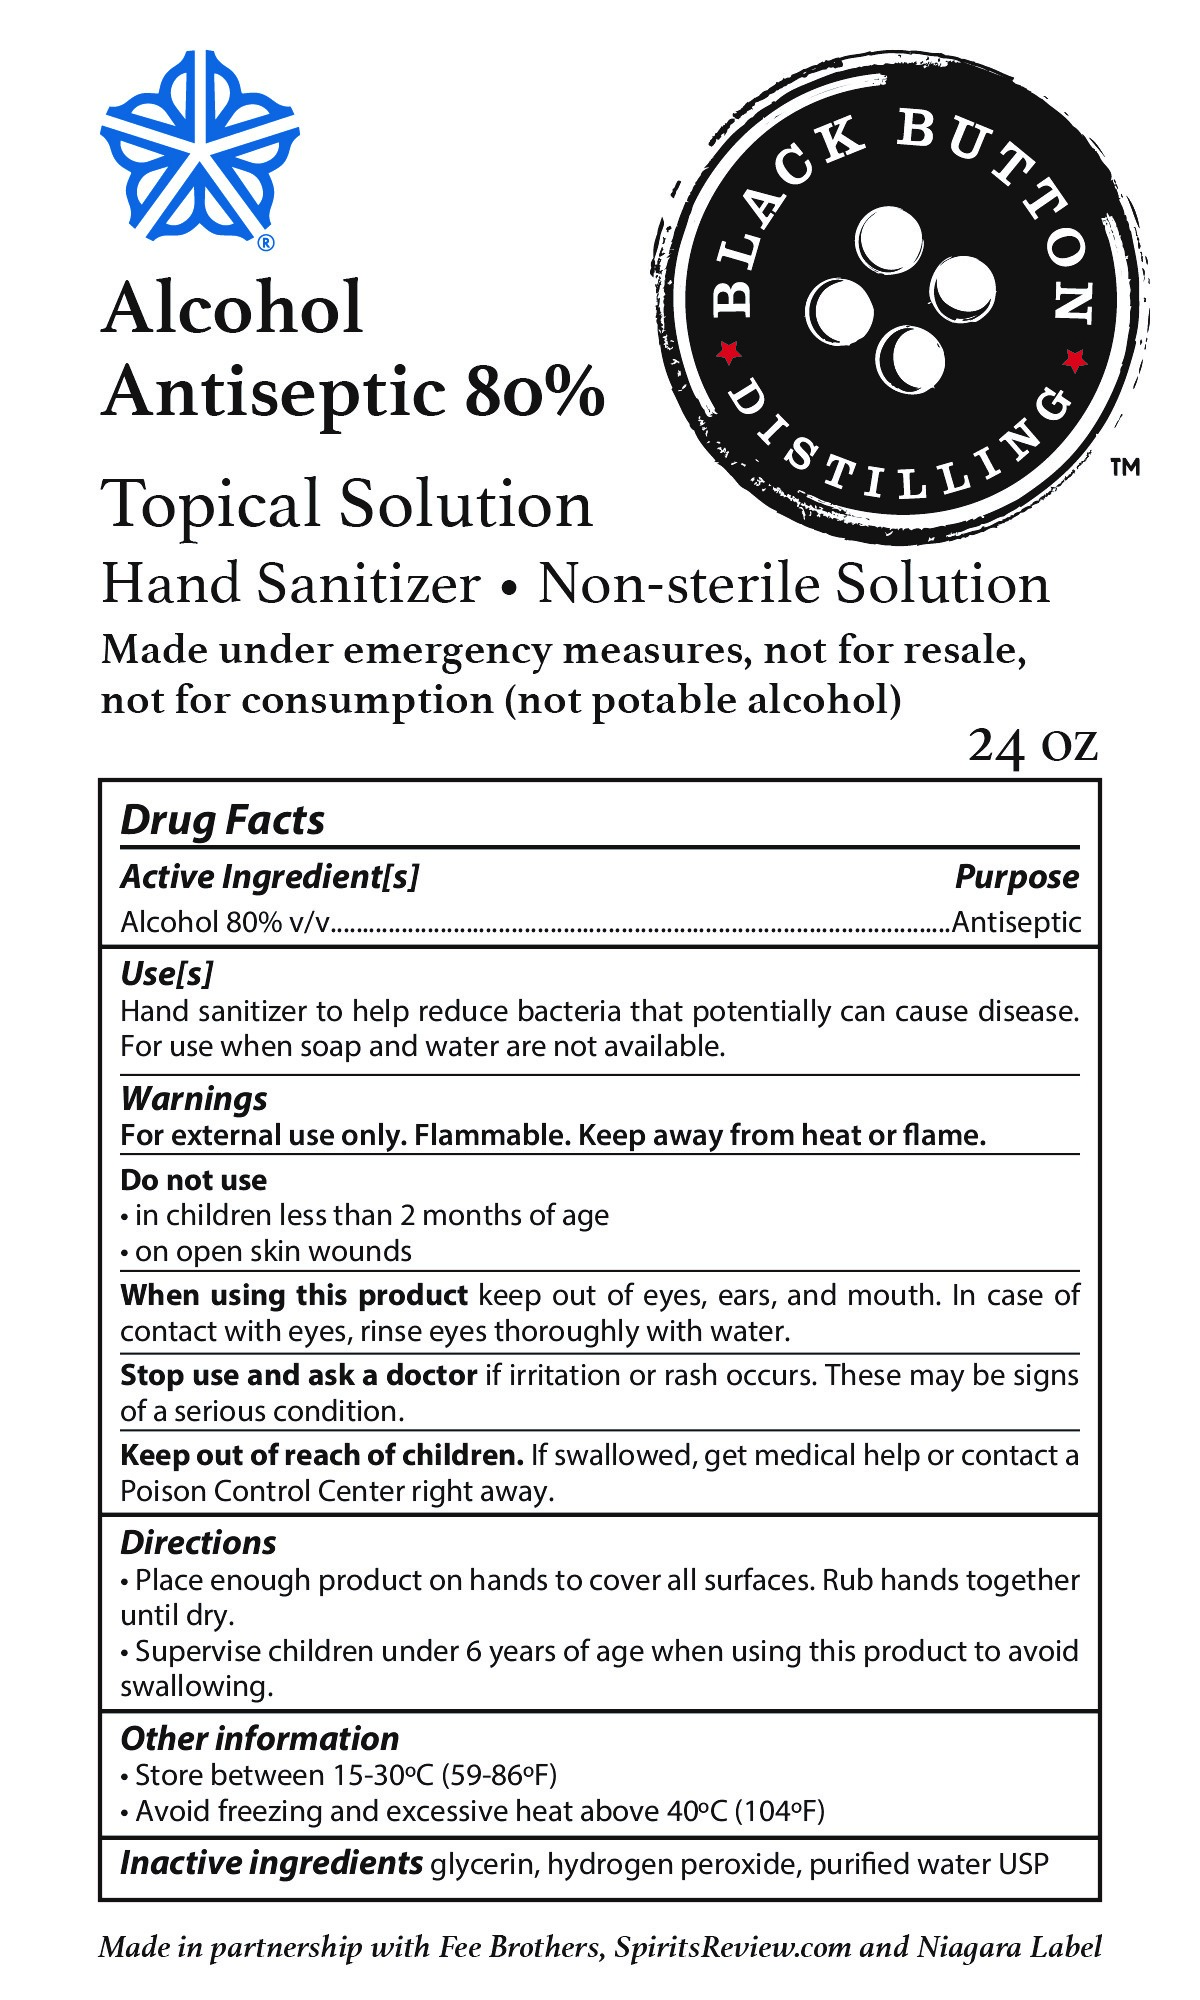 Hand Sanitizer Label for 24 oz bottle